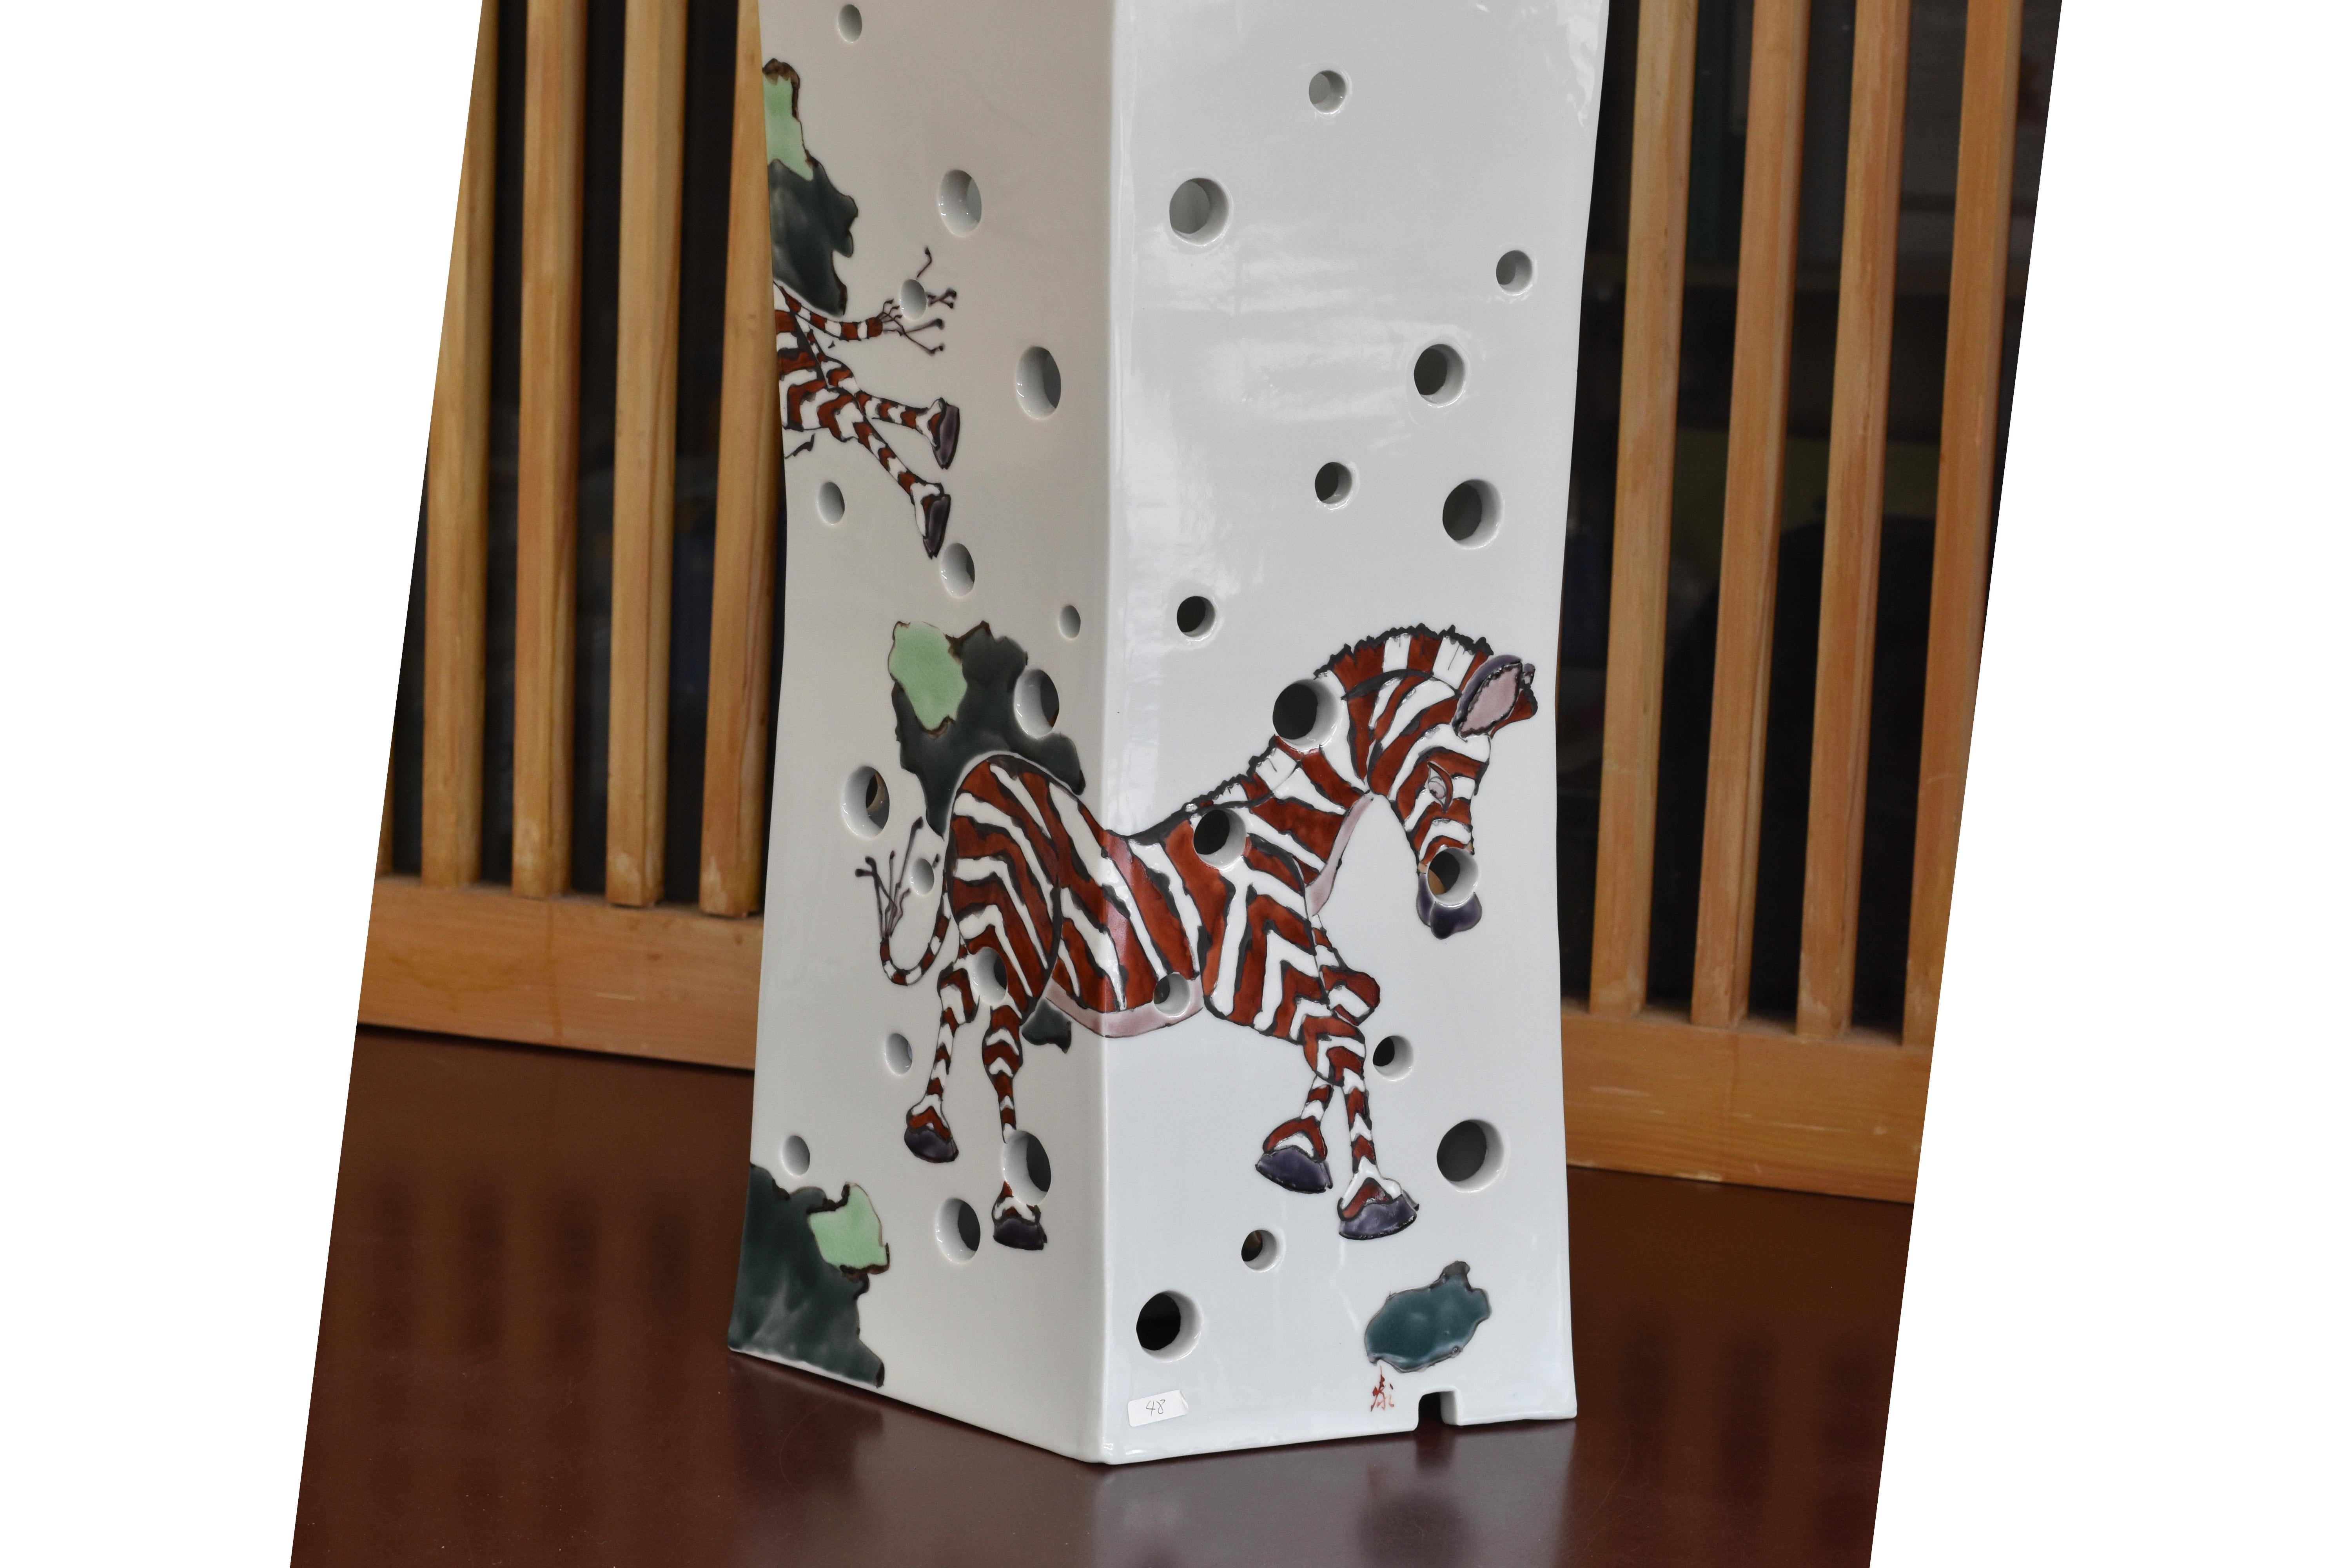 Vase/lampe en porcelaine japonaise contemporaine peinte à la main, d'une qualité muséale exquise, de forme rectangulaire élégante, avec son interprétation unique des zèbres dans un brun chocolat époustouflant. Sur la surface de cette pièce